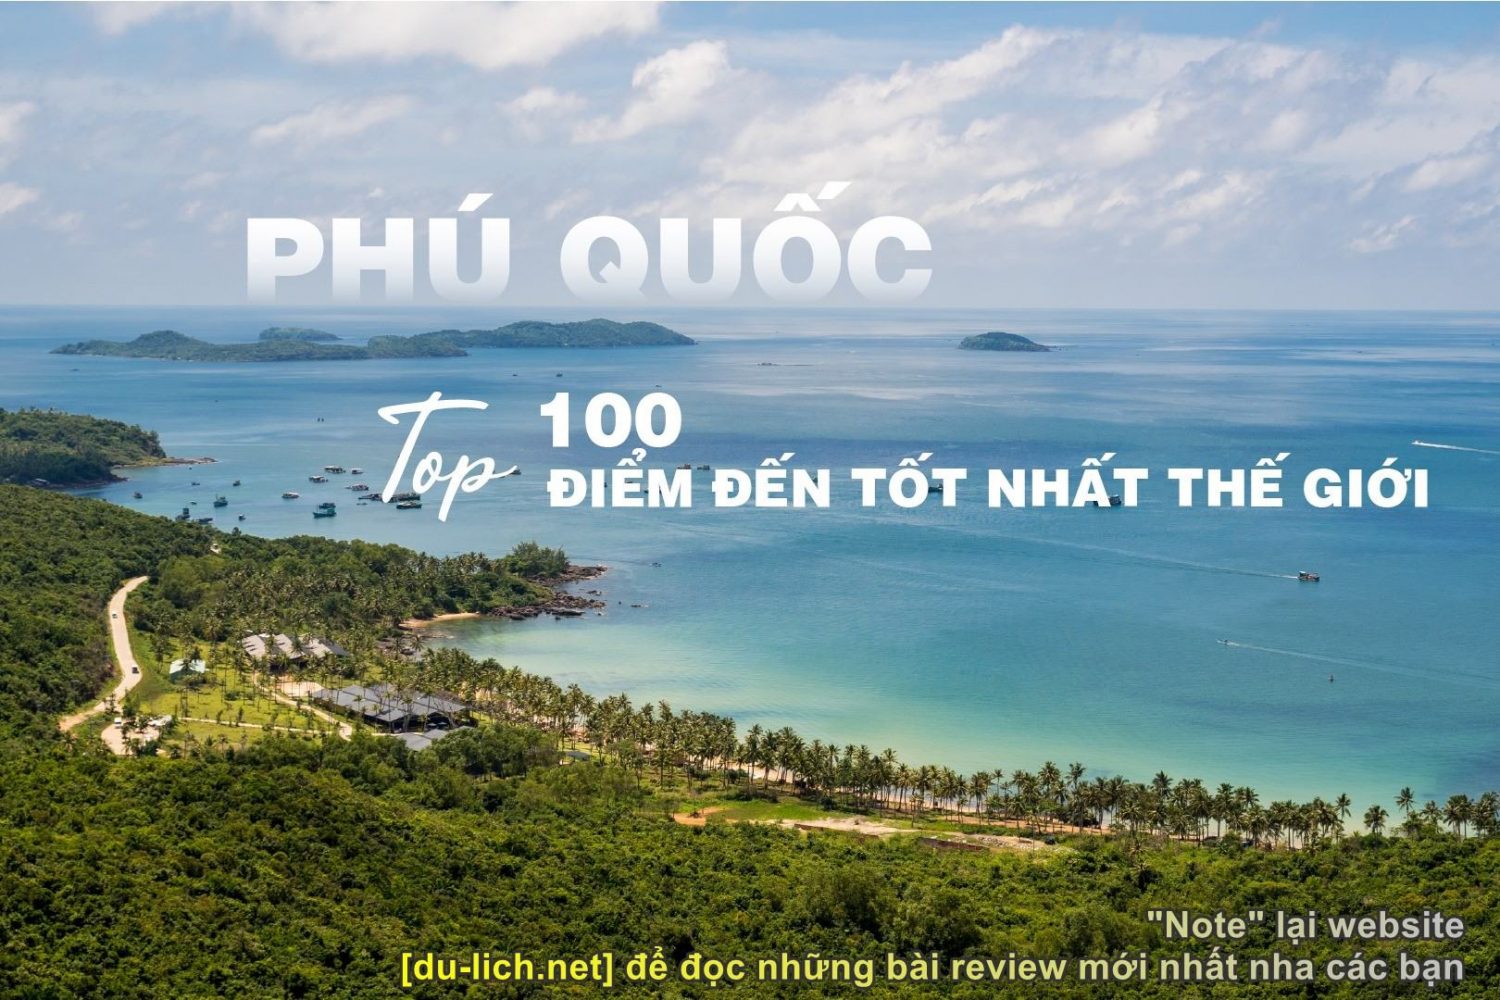 Note lại 16 địa điểm hot ở Bắc đảo Nam đảo Phú Quốc